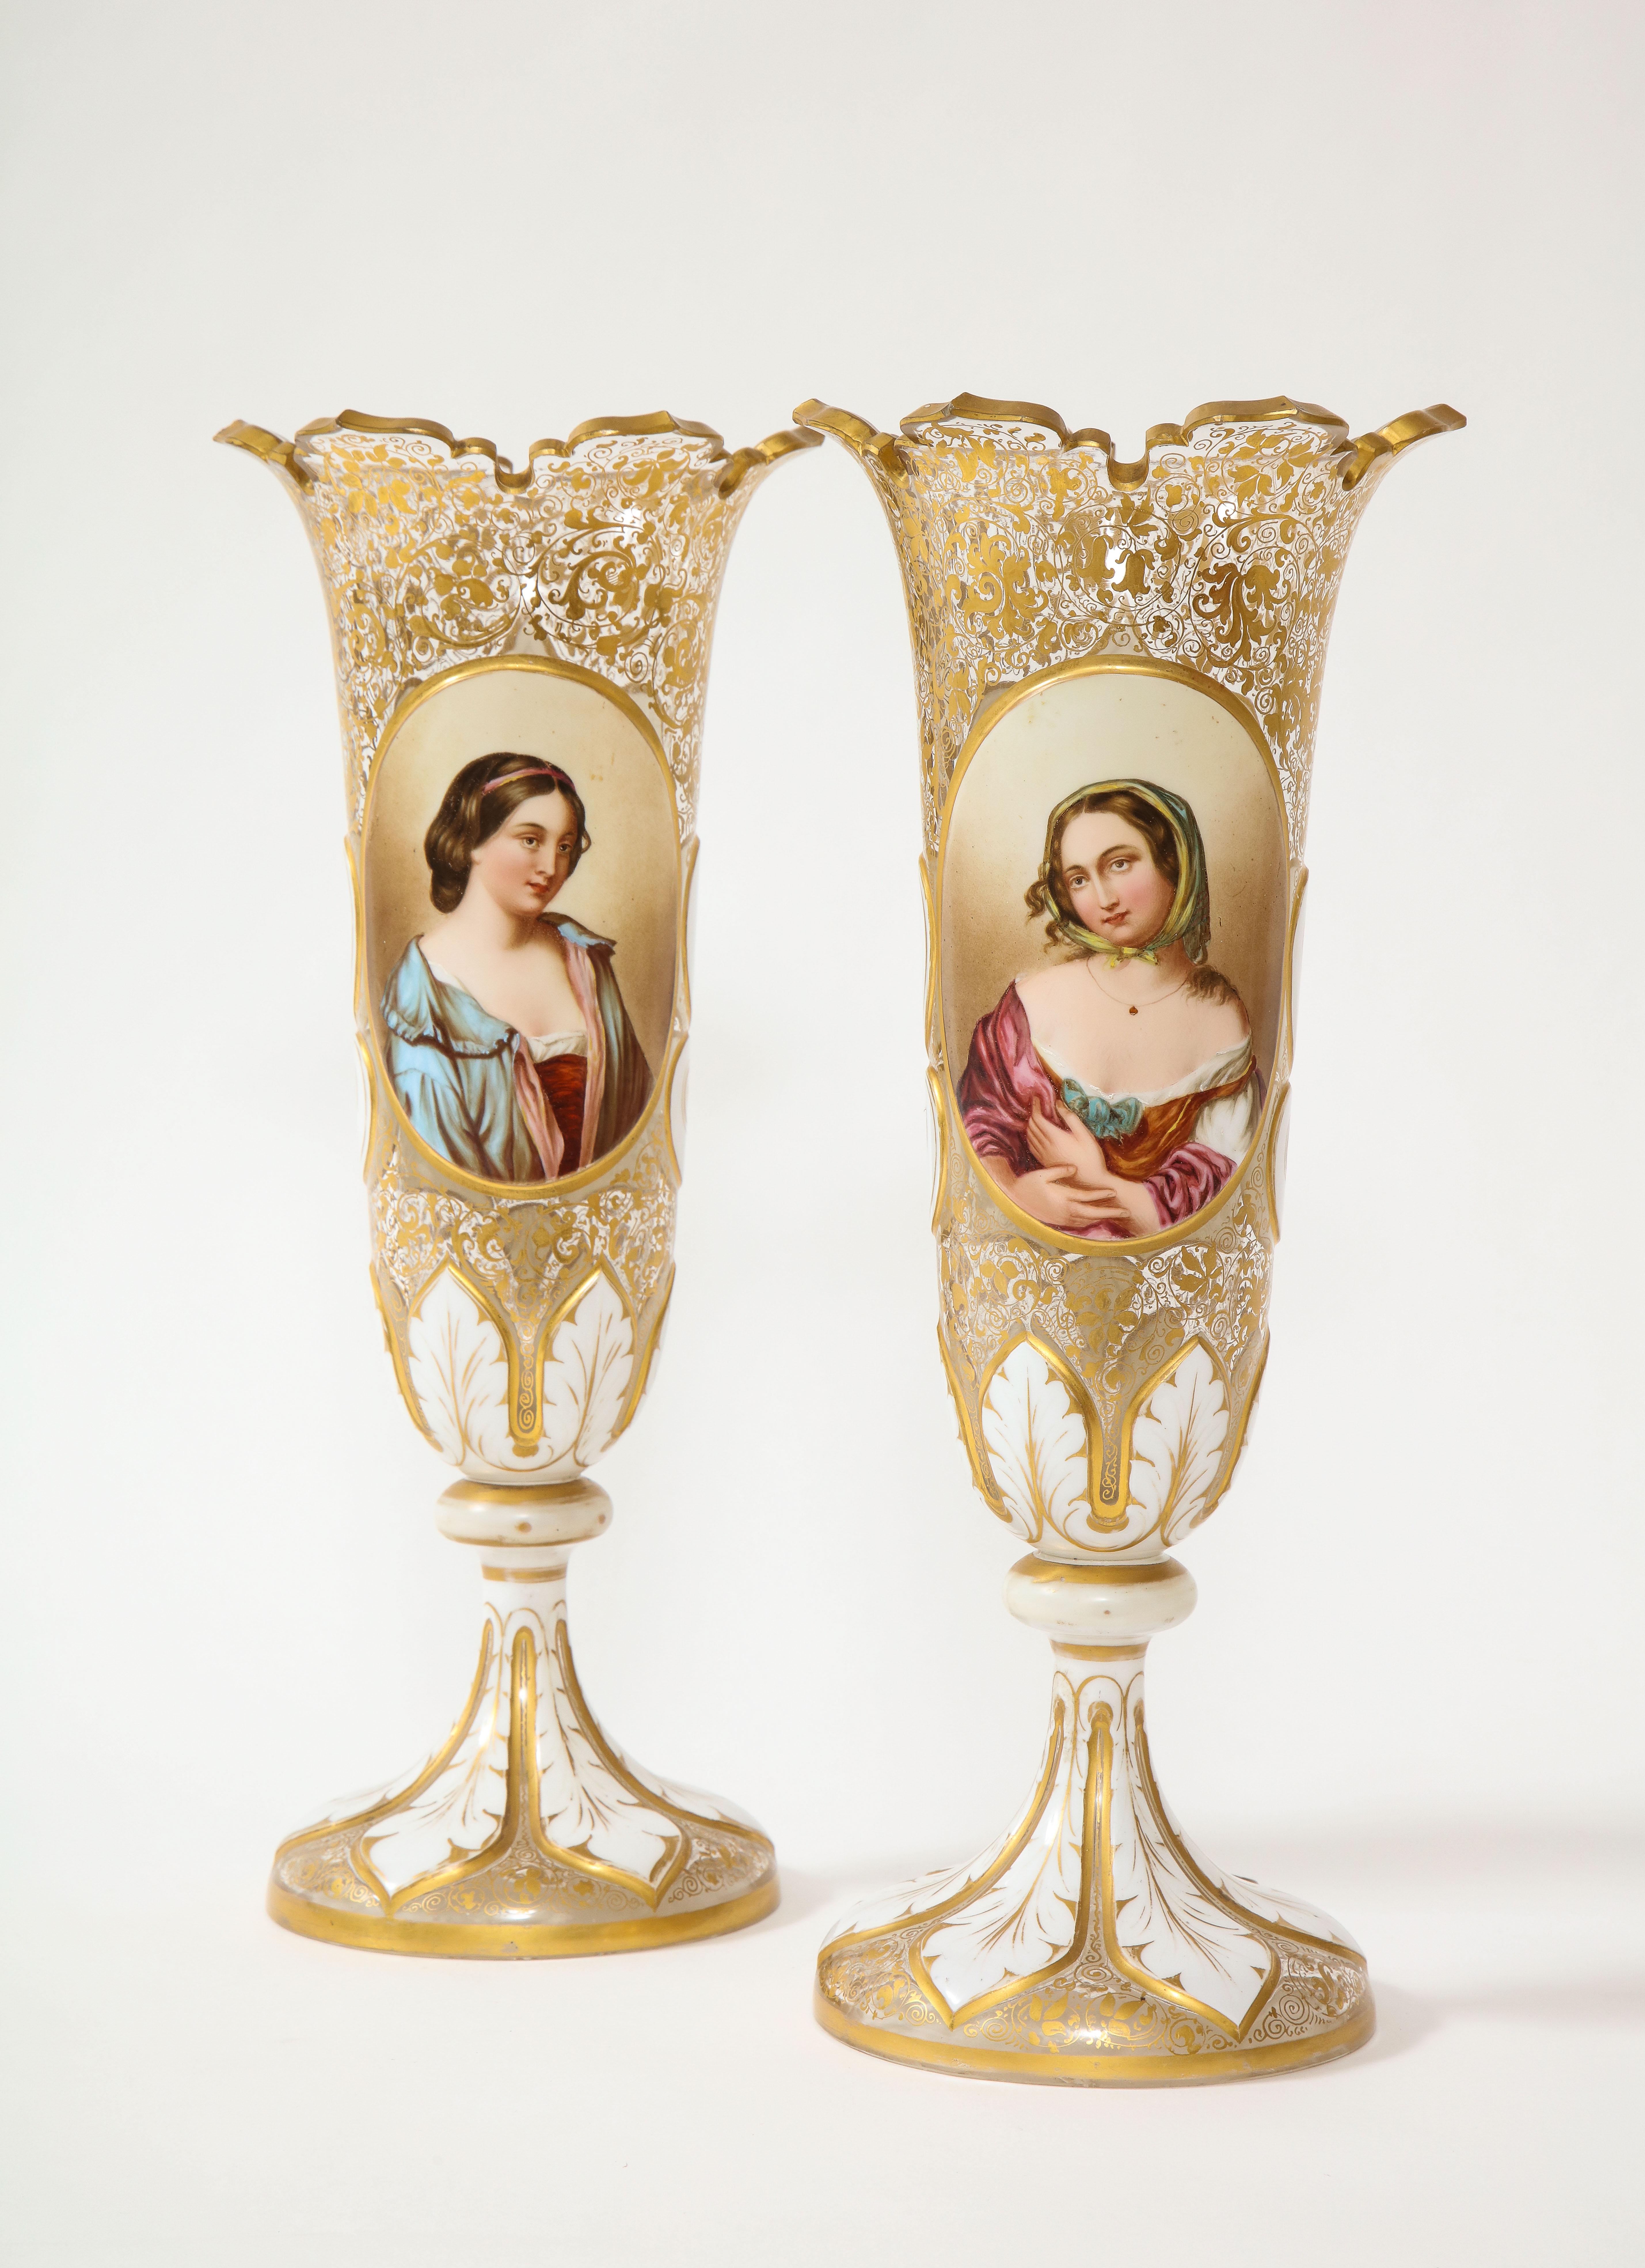 Paire de vases portraits de vierges en cristal blanc et transparent de style Louis XVI du 19e siècle, avec décor doré peint à la main. Chacune est joliment peinte à la main avec de superbes jeunes filles qui se regardent. Chaque jeune fille est